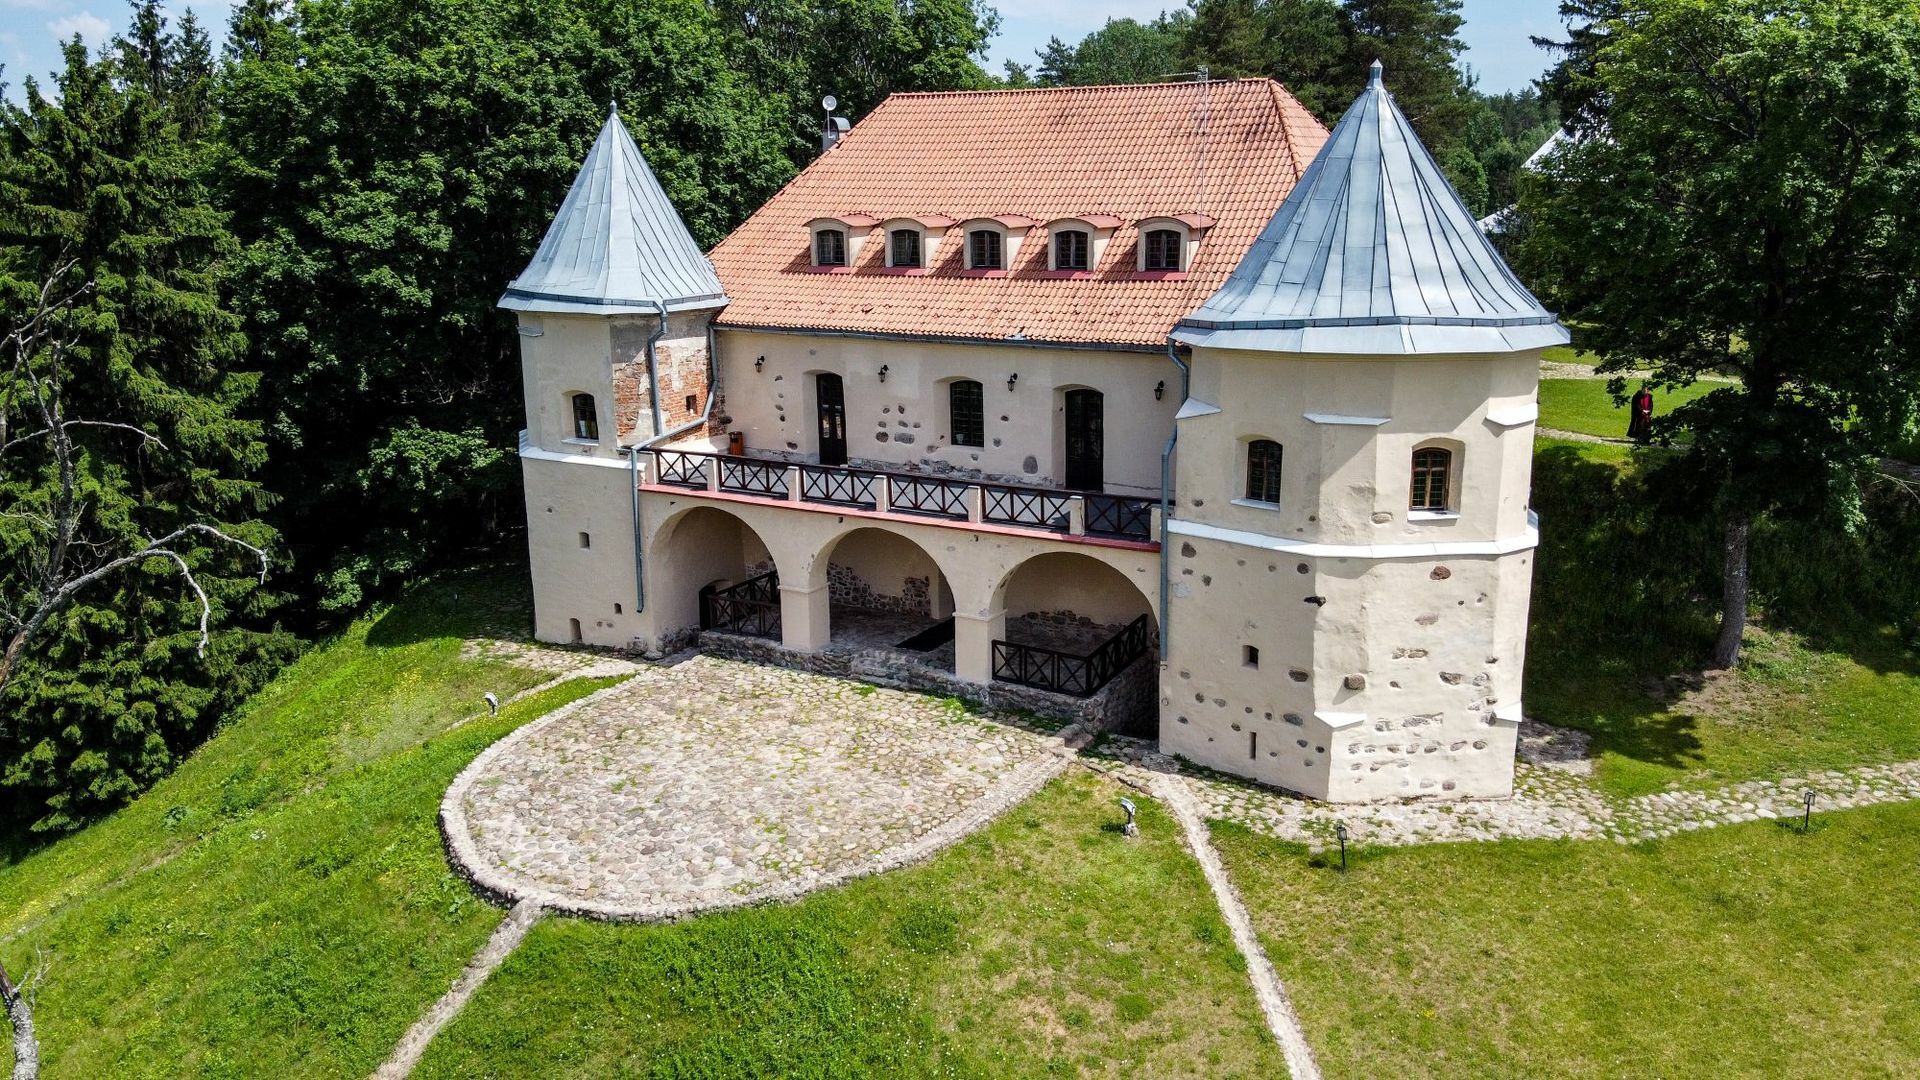 Norviliškių pilis